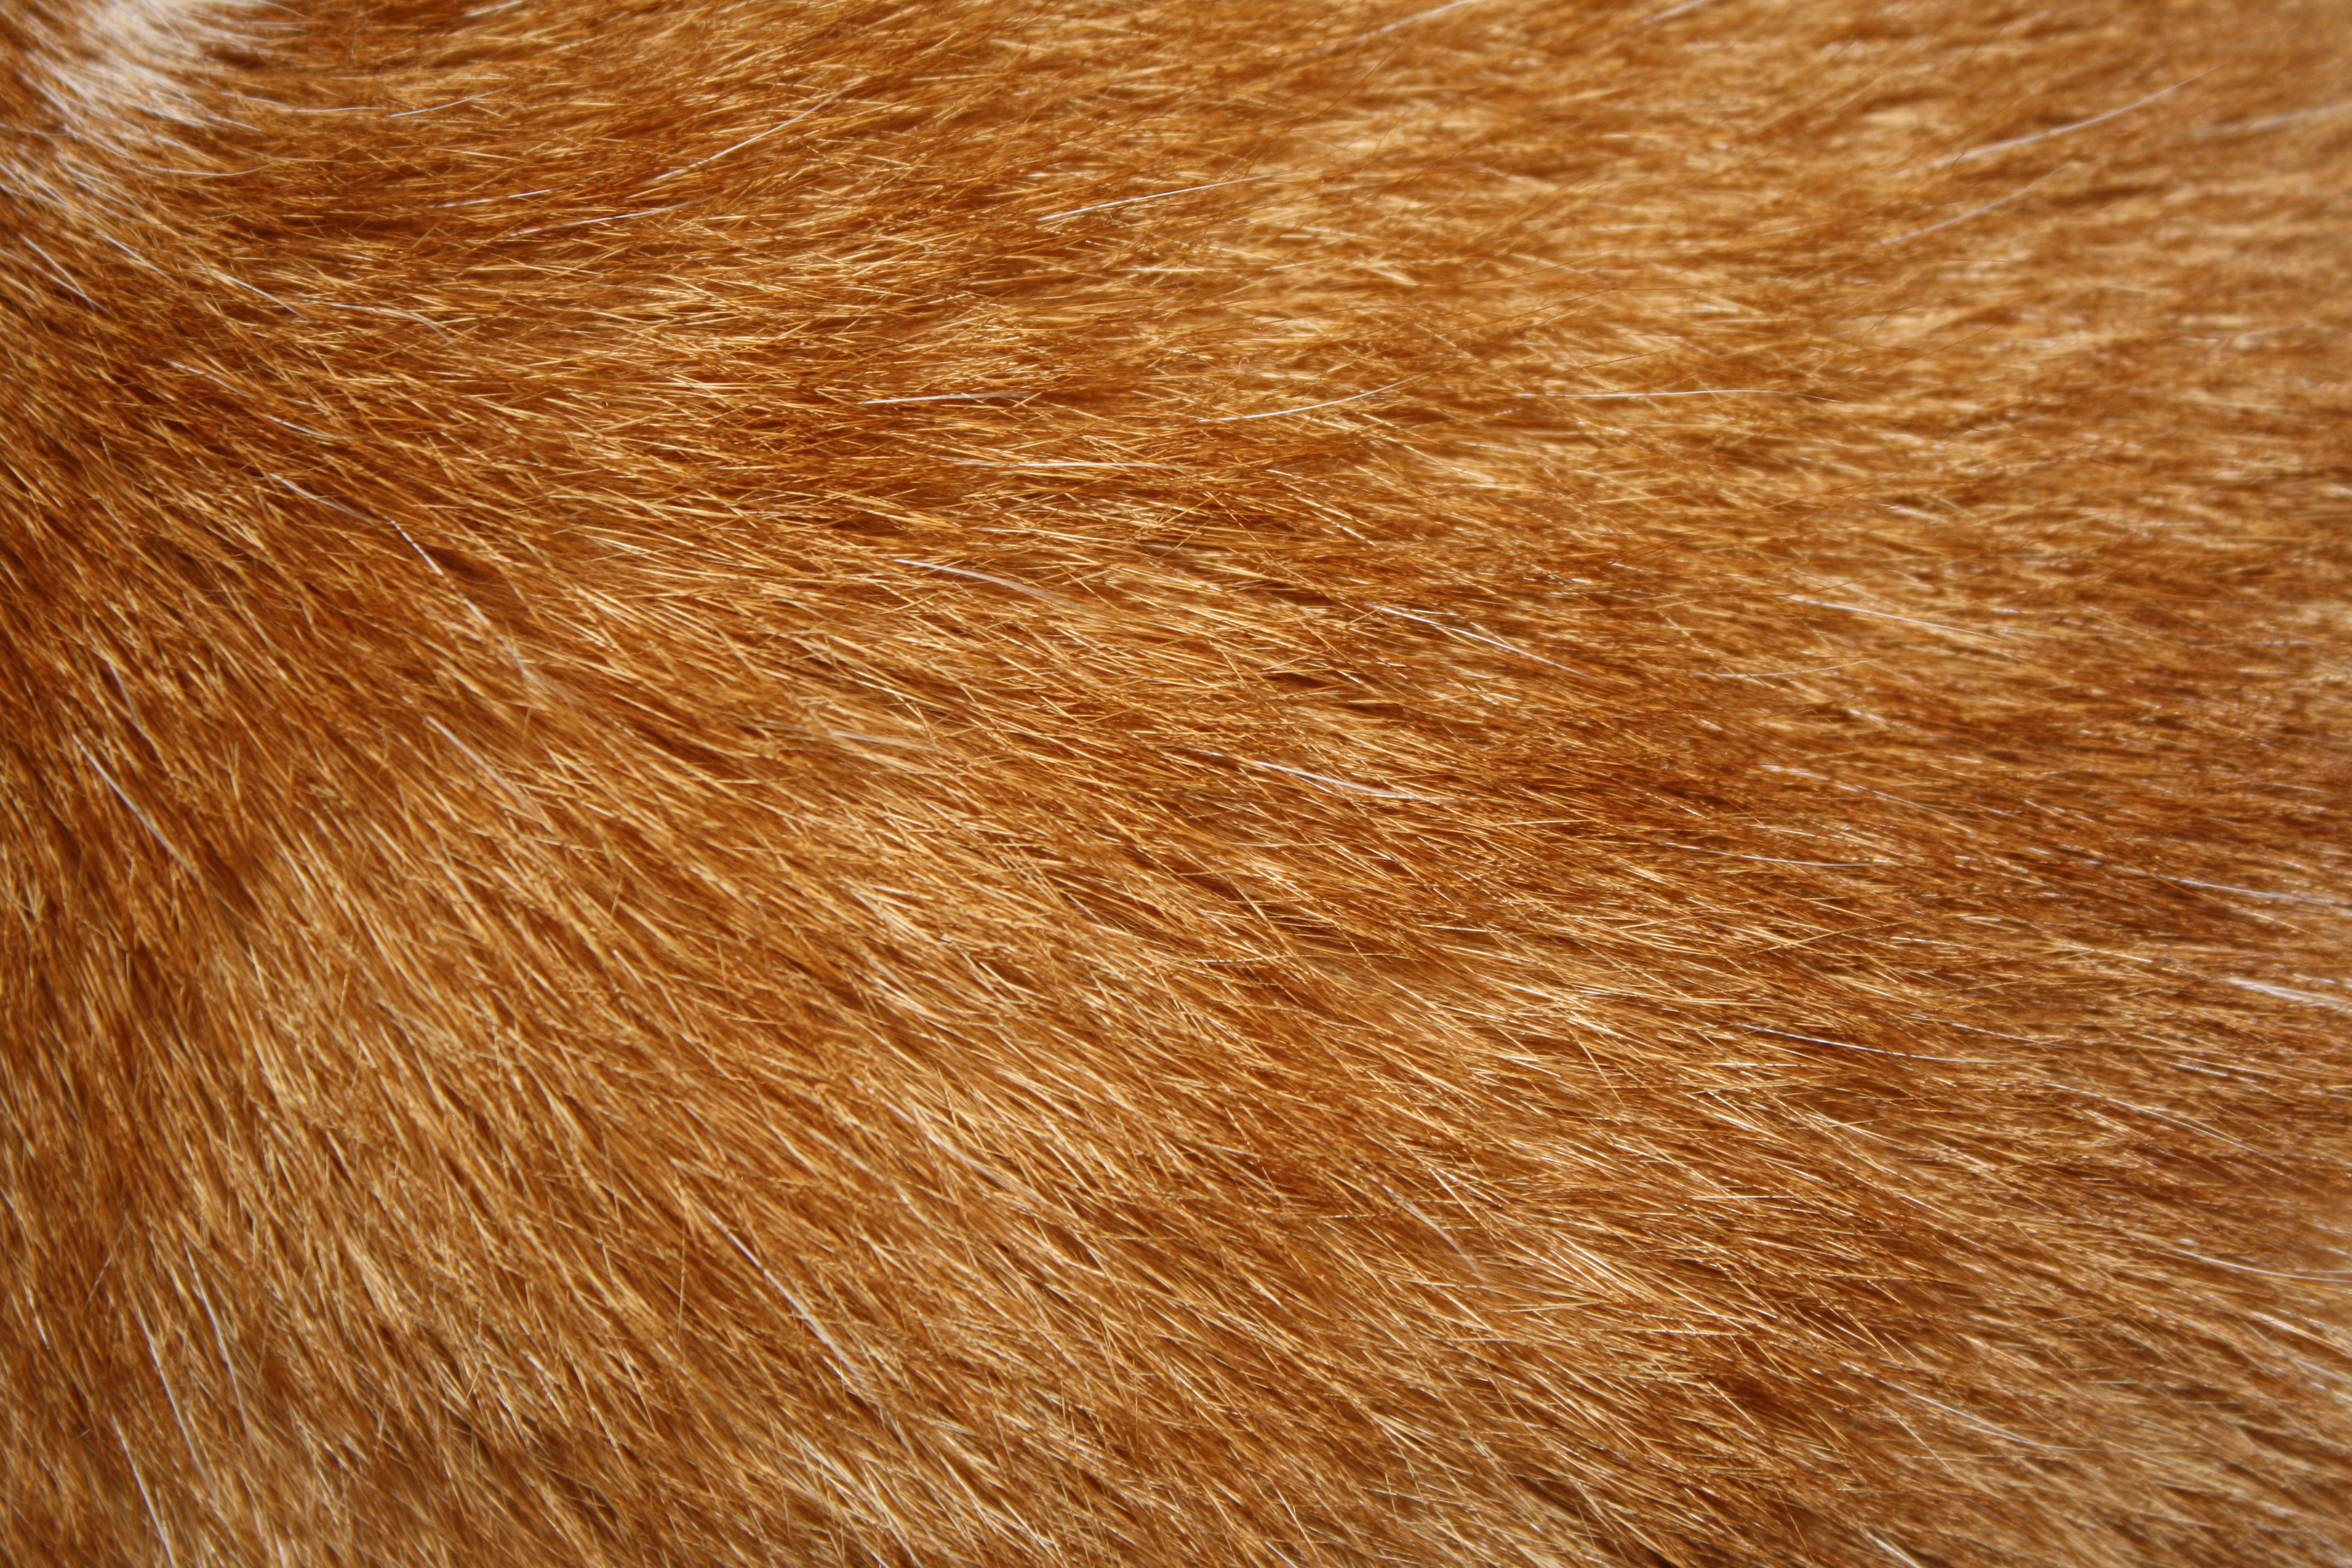 Orange Tabby Cat Fur Texture Picture Photograph Photos Public